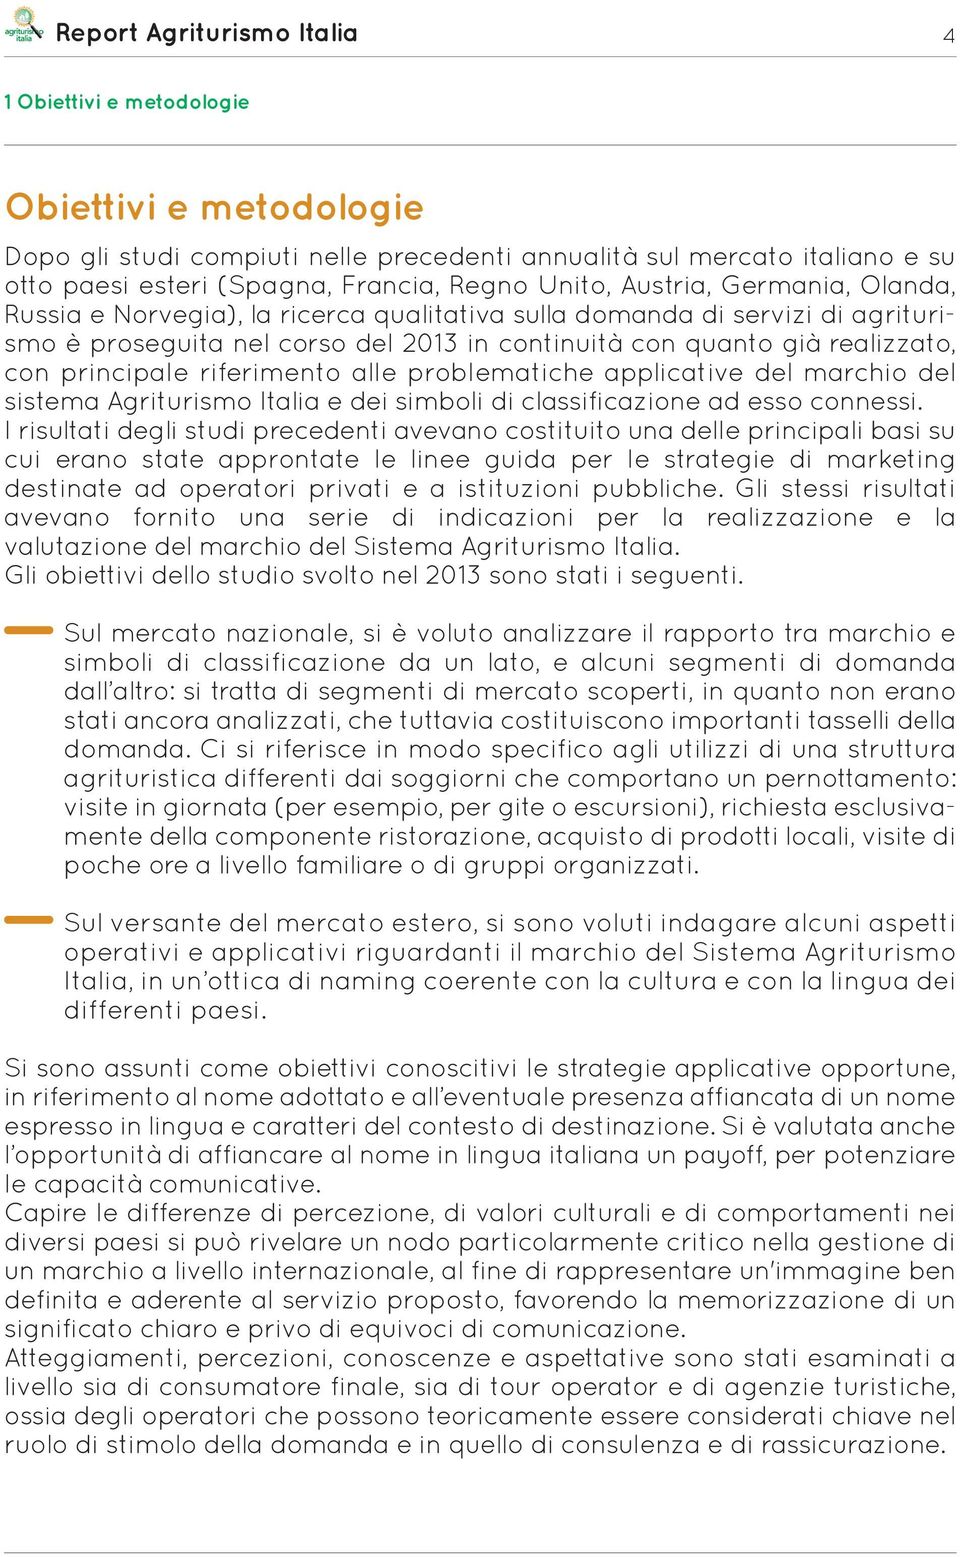 problematiche applicative del marchio del sistema Agriturismo Italia e dei simboli di classificazione ad esso connessi.